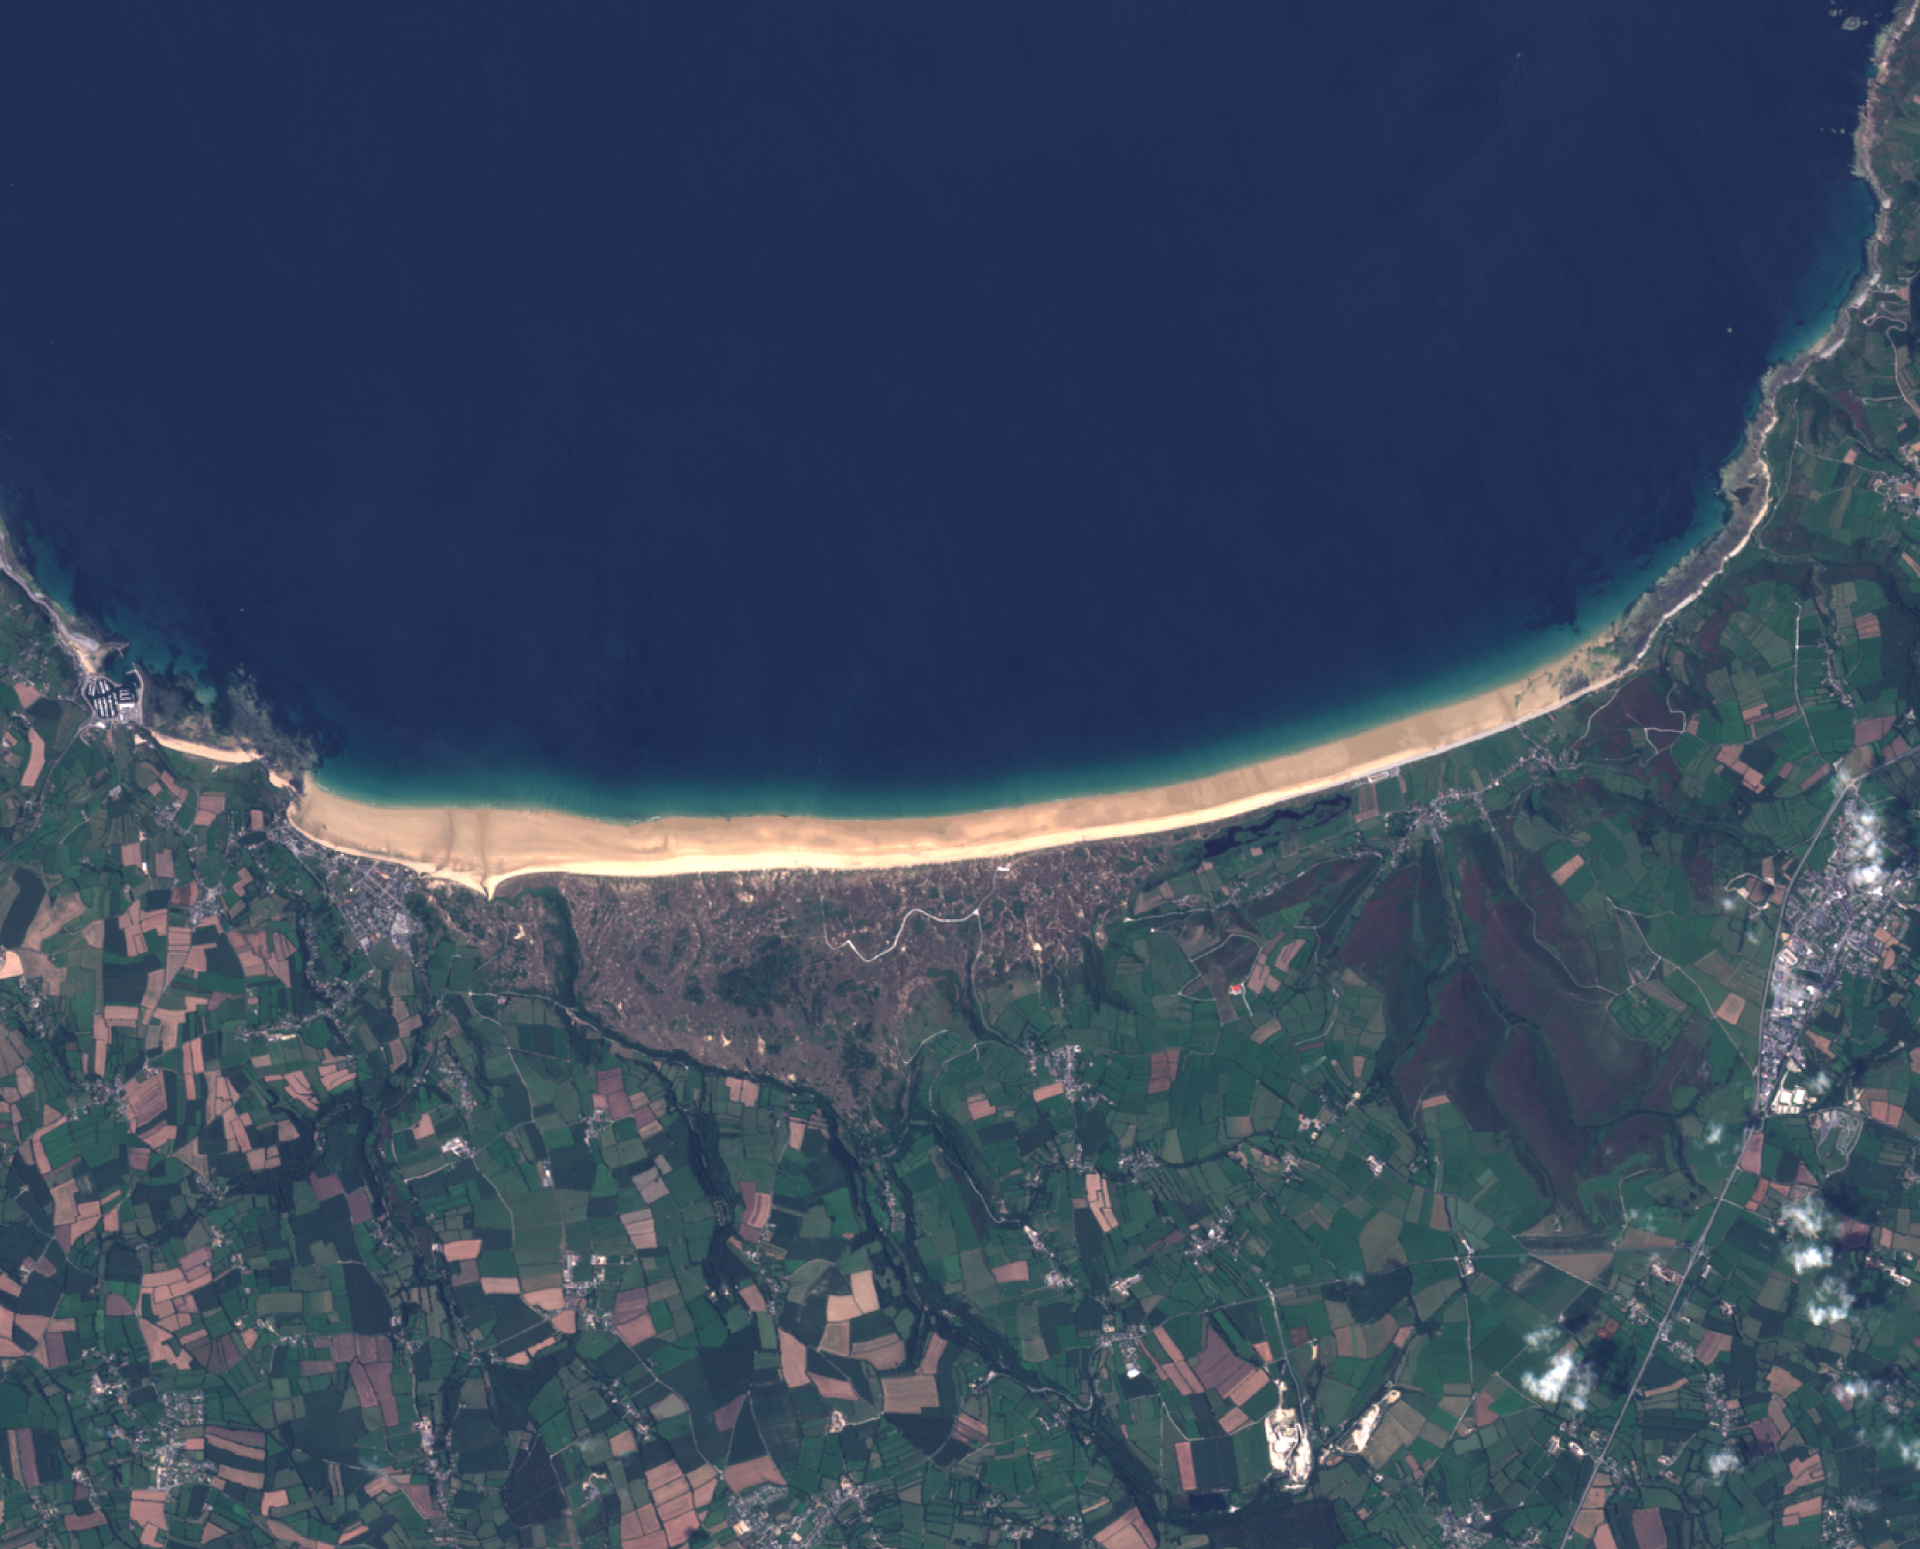  Rentrée scolaire - Septembre 2016 - Quiz image satellite et environnement - Indice - Un autre regard sur la Terre - Pédagogie - éducation - science à l'école - CSTI